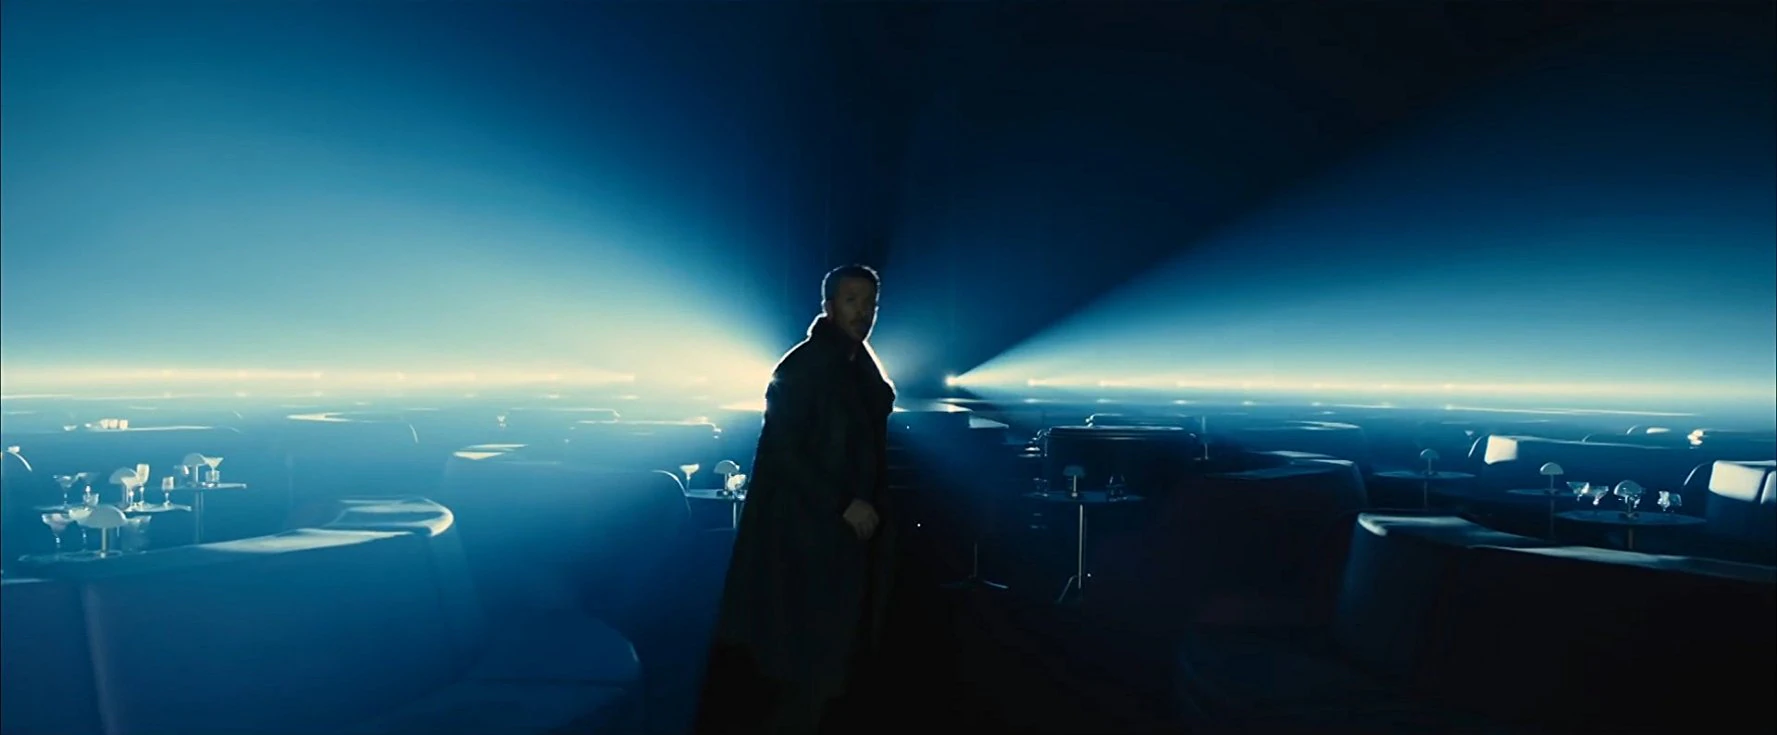 La nueva entrega de Blade Runner, en imágenes